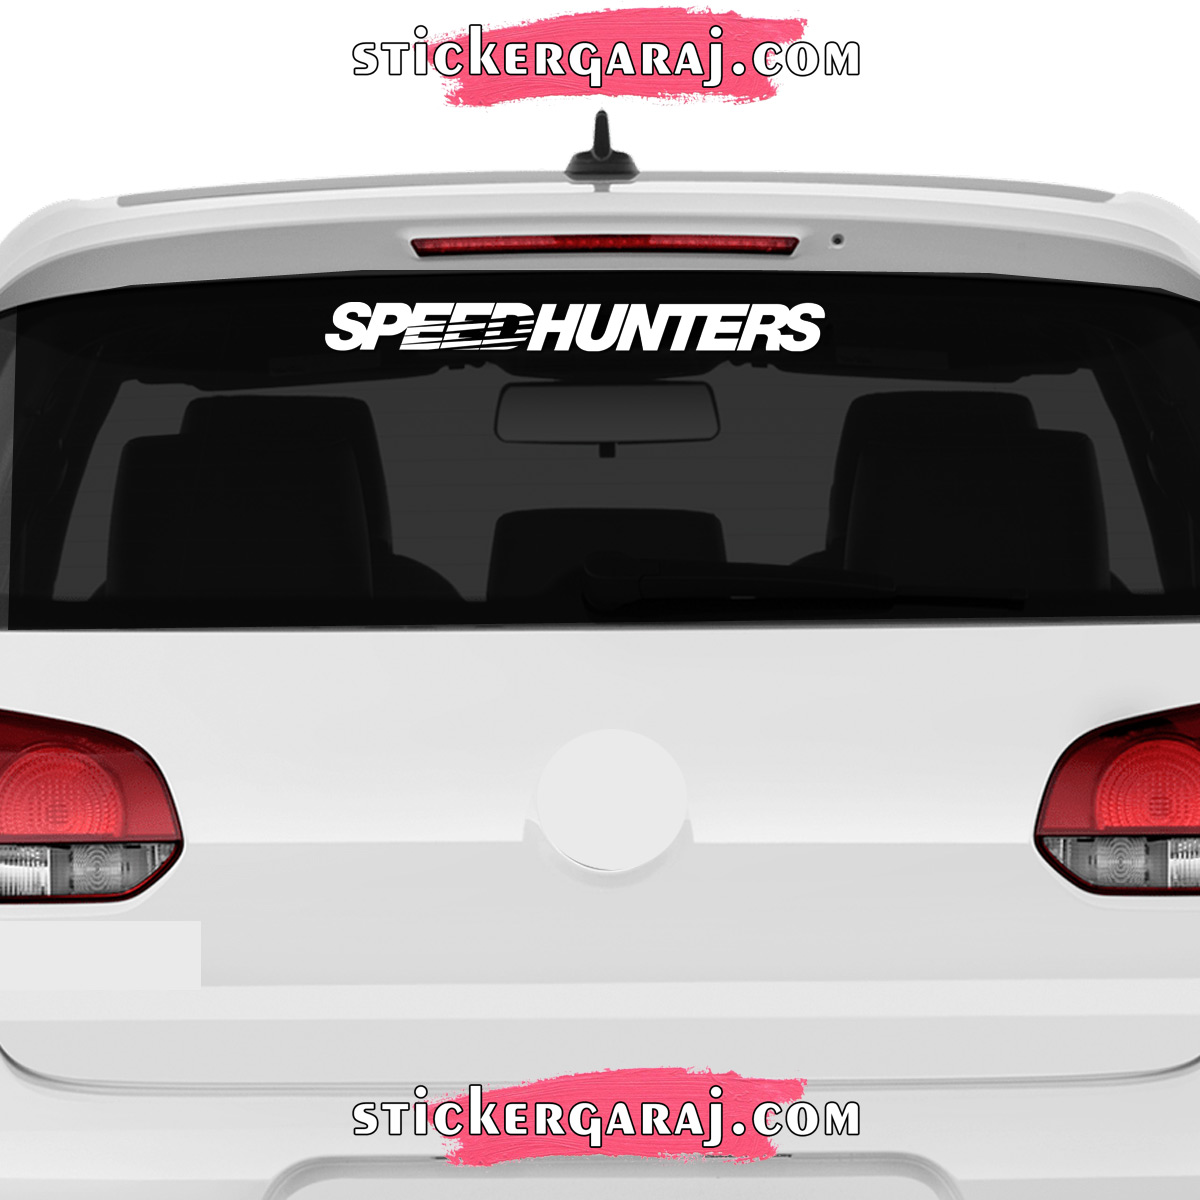 Seat cam sticker - Seat cam sticker - speedhunters